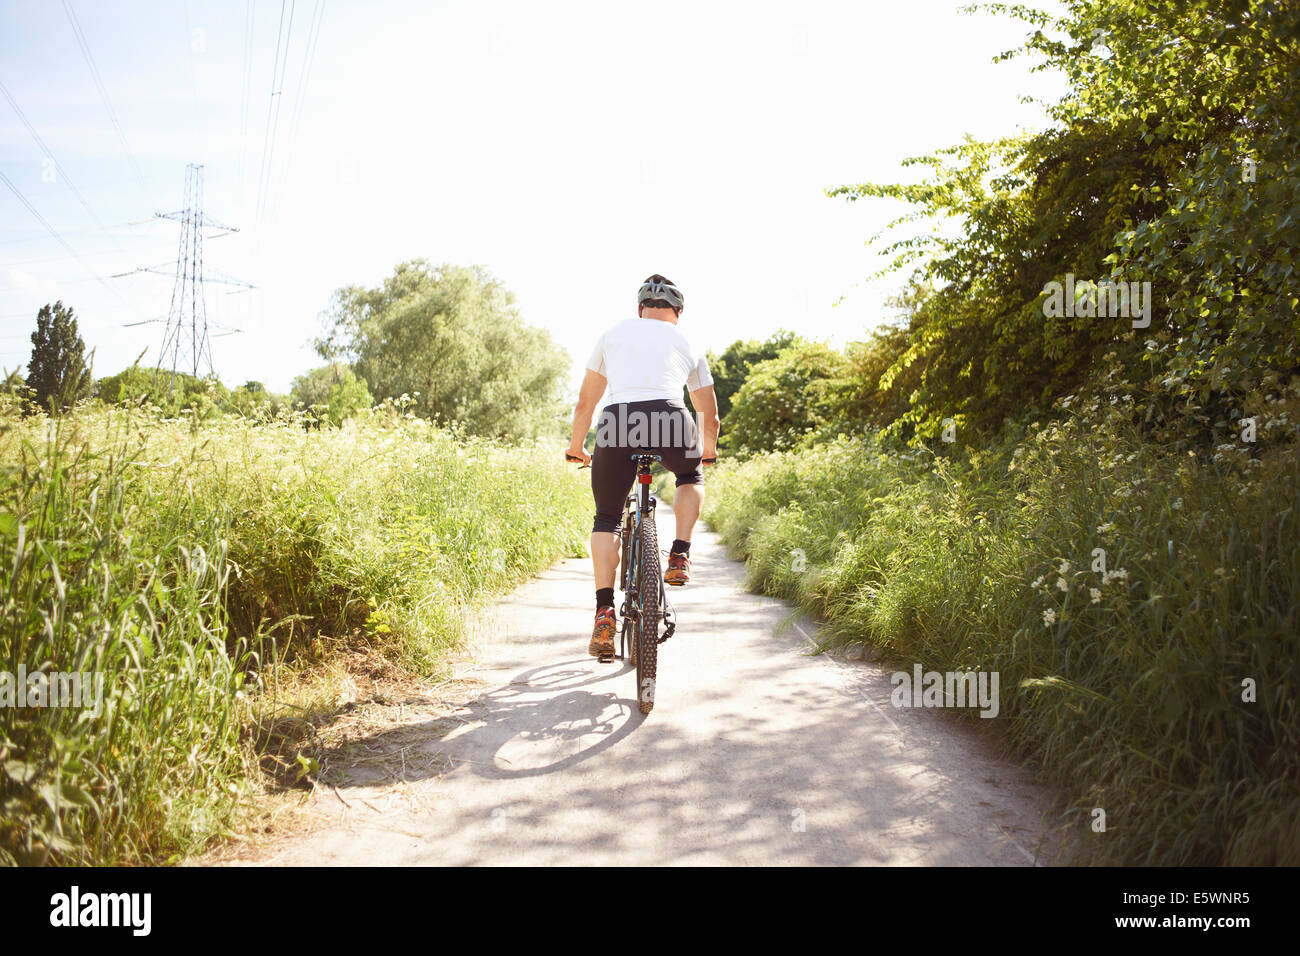 Vélo Cycliste sur le chemin Banque D'Images